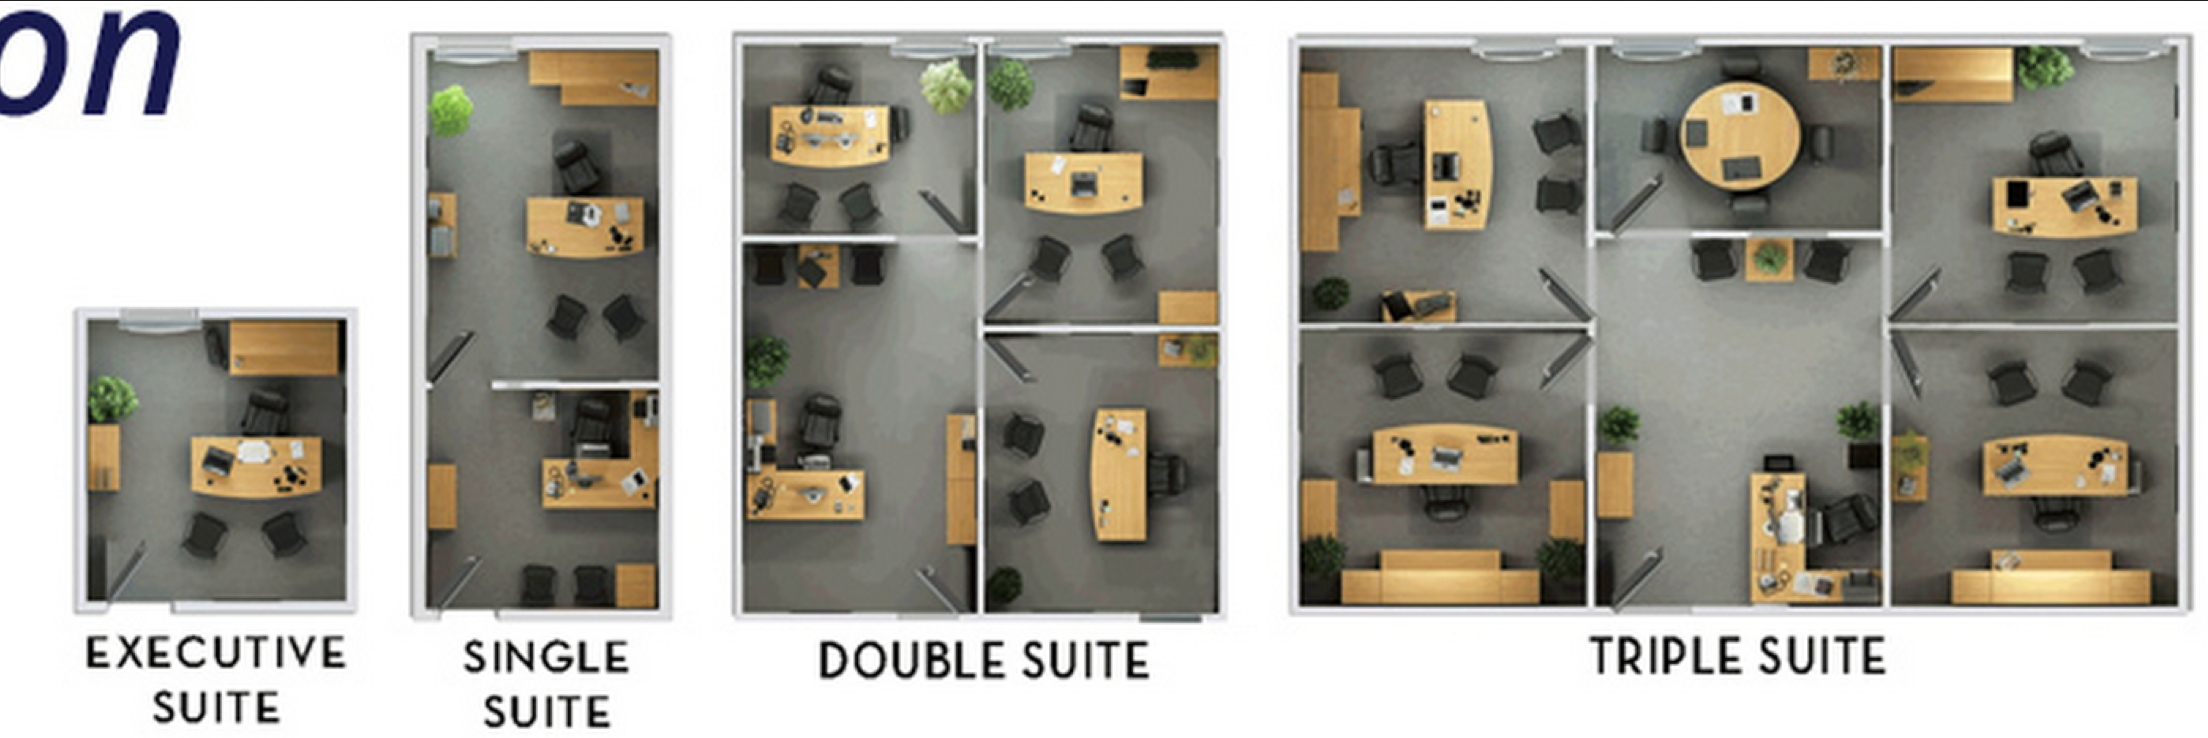 Single suite and multi suite oddice layouts